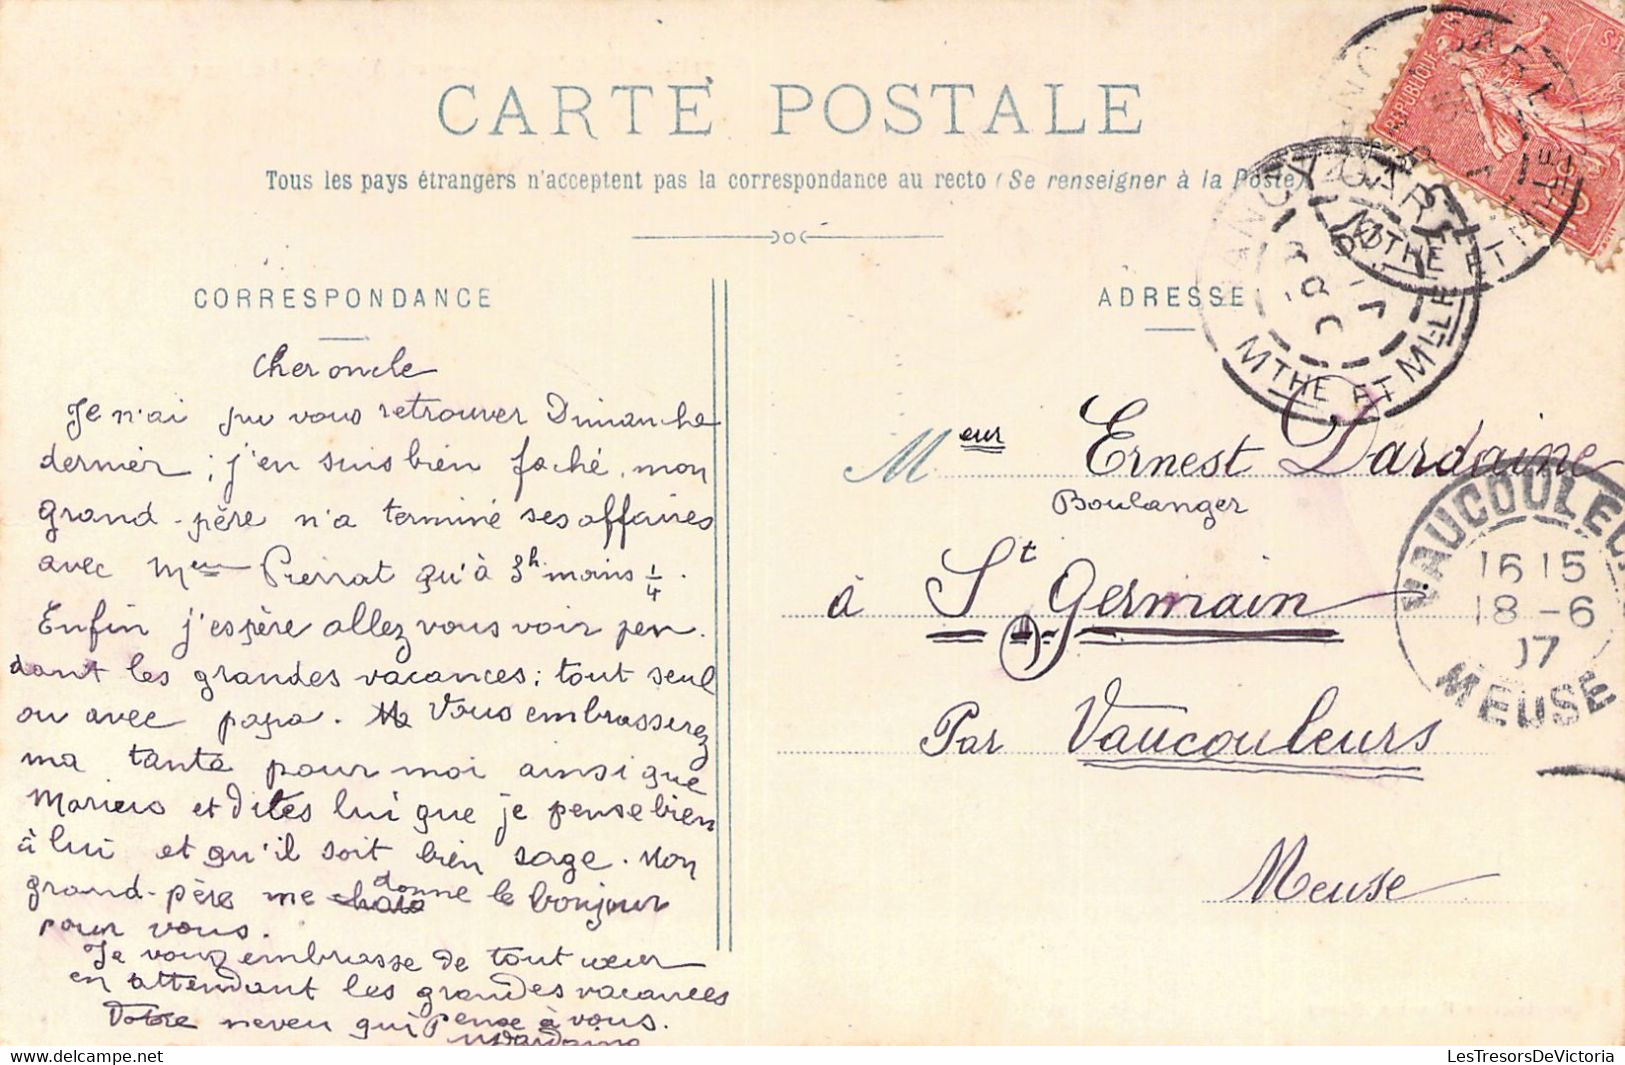 FRANCE - 54 - BOUXIERES AUX DAMES - Le Pont - Baigneurs - Carte Postale Ancienne - Otros & Sin Clasificación